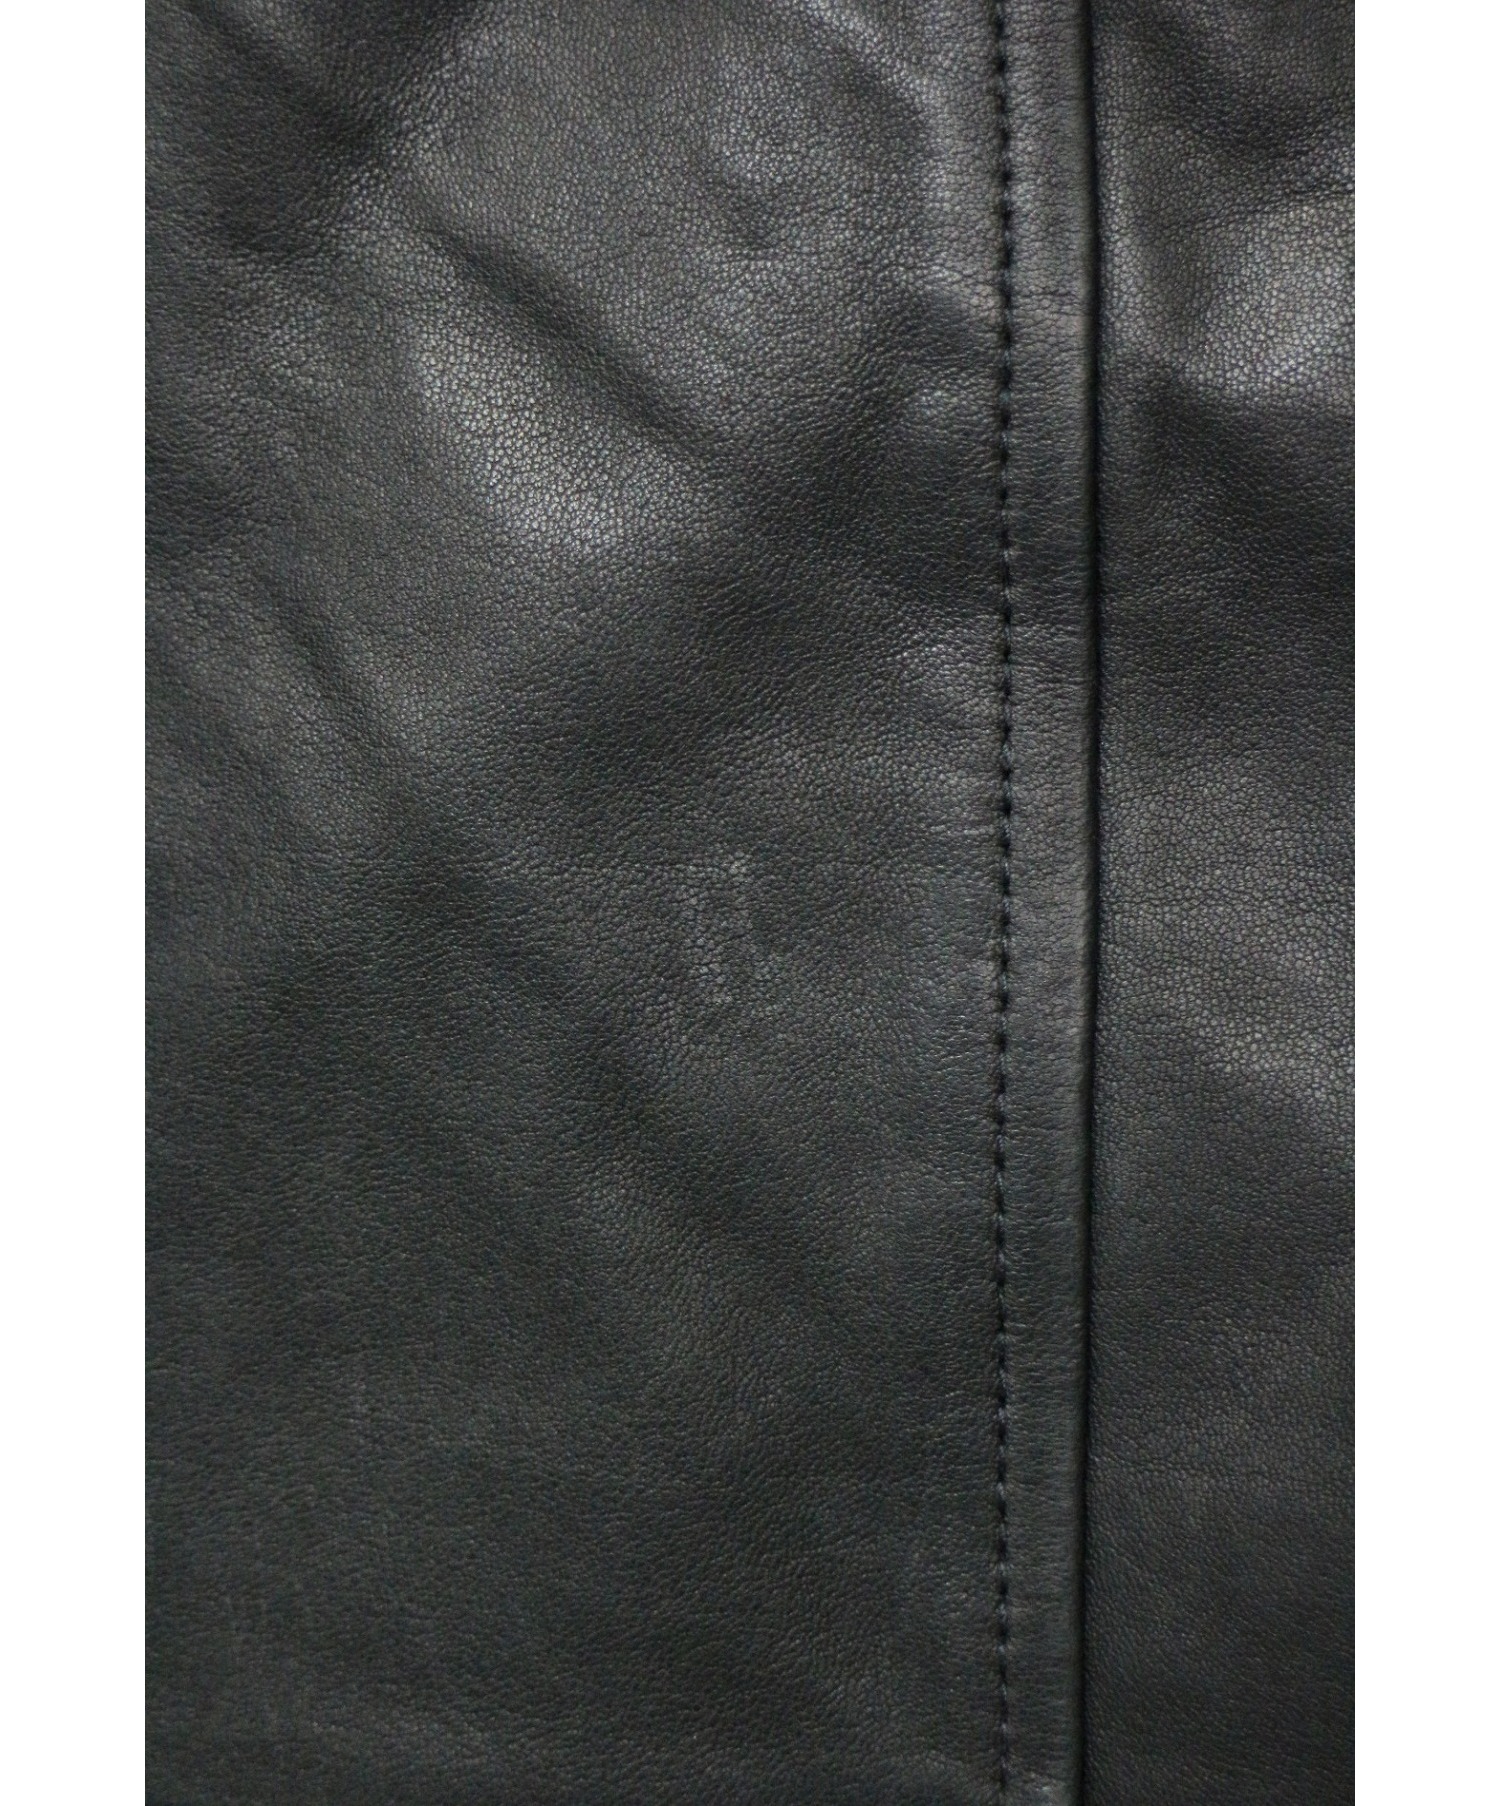 Amphibian (アンフィビアン) フーデッドレザージャケット ブラック サイズ:M